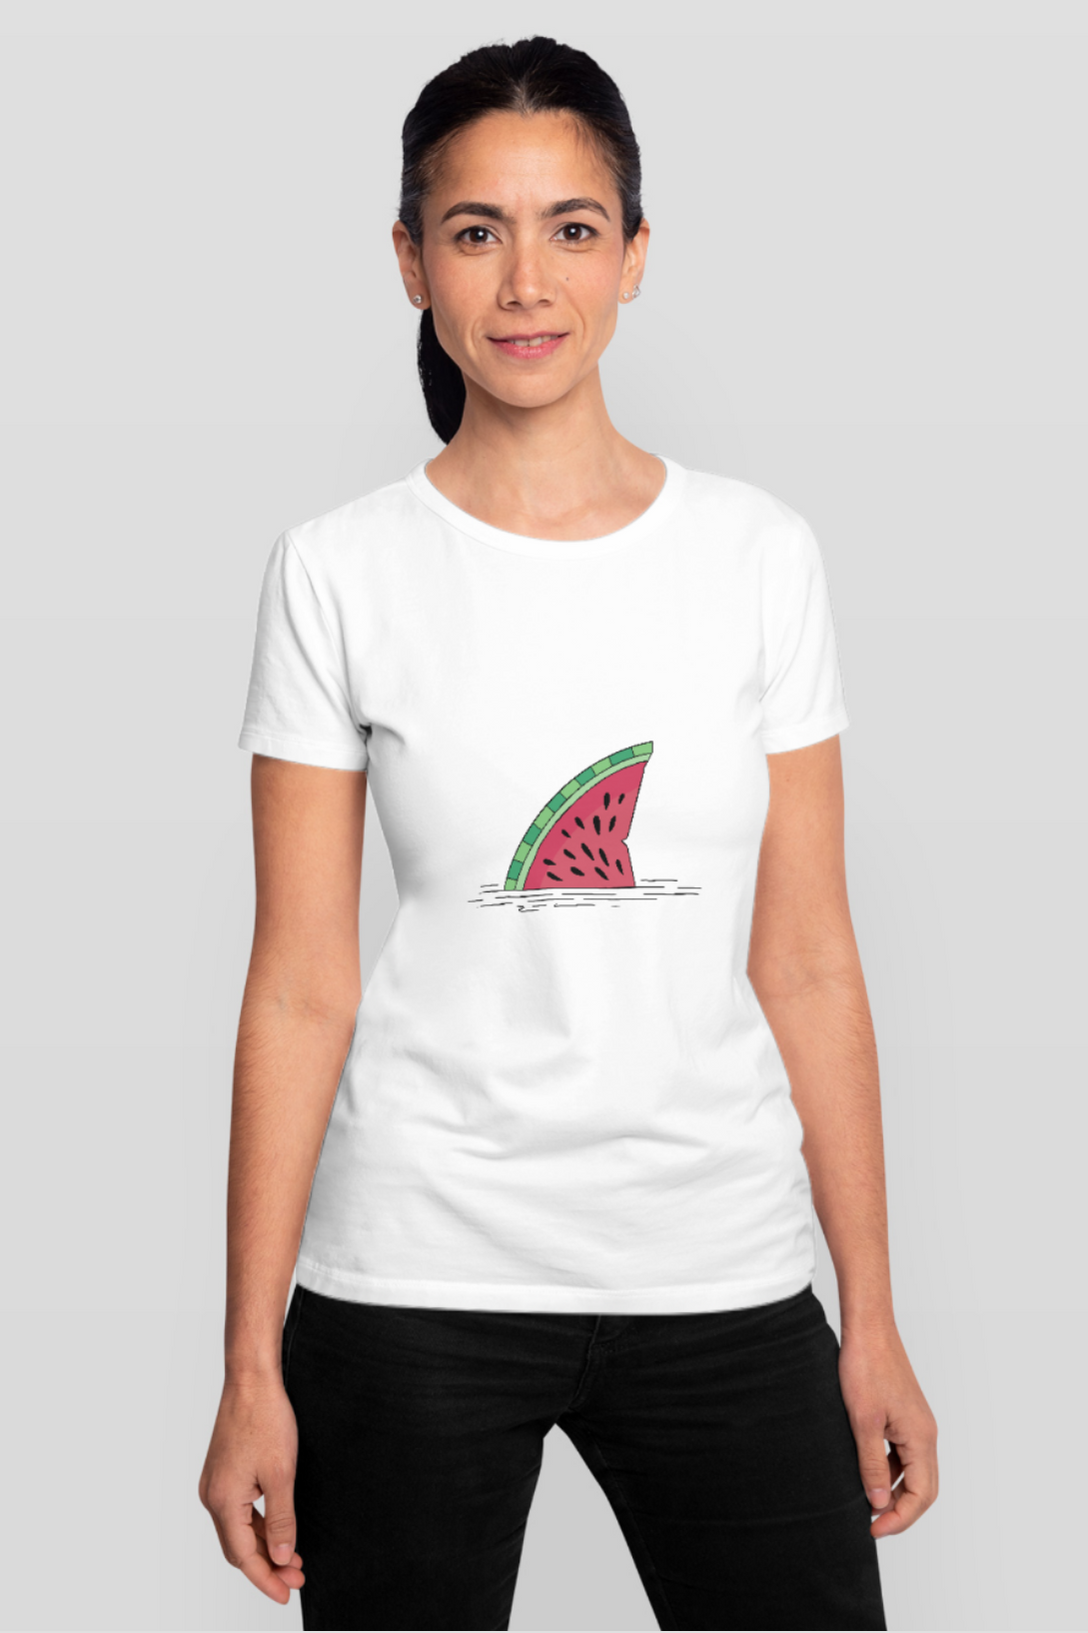 Watermelon Shark Fin Printed T-Shirt For Women - WowWaves - 6